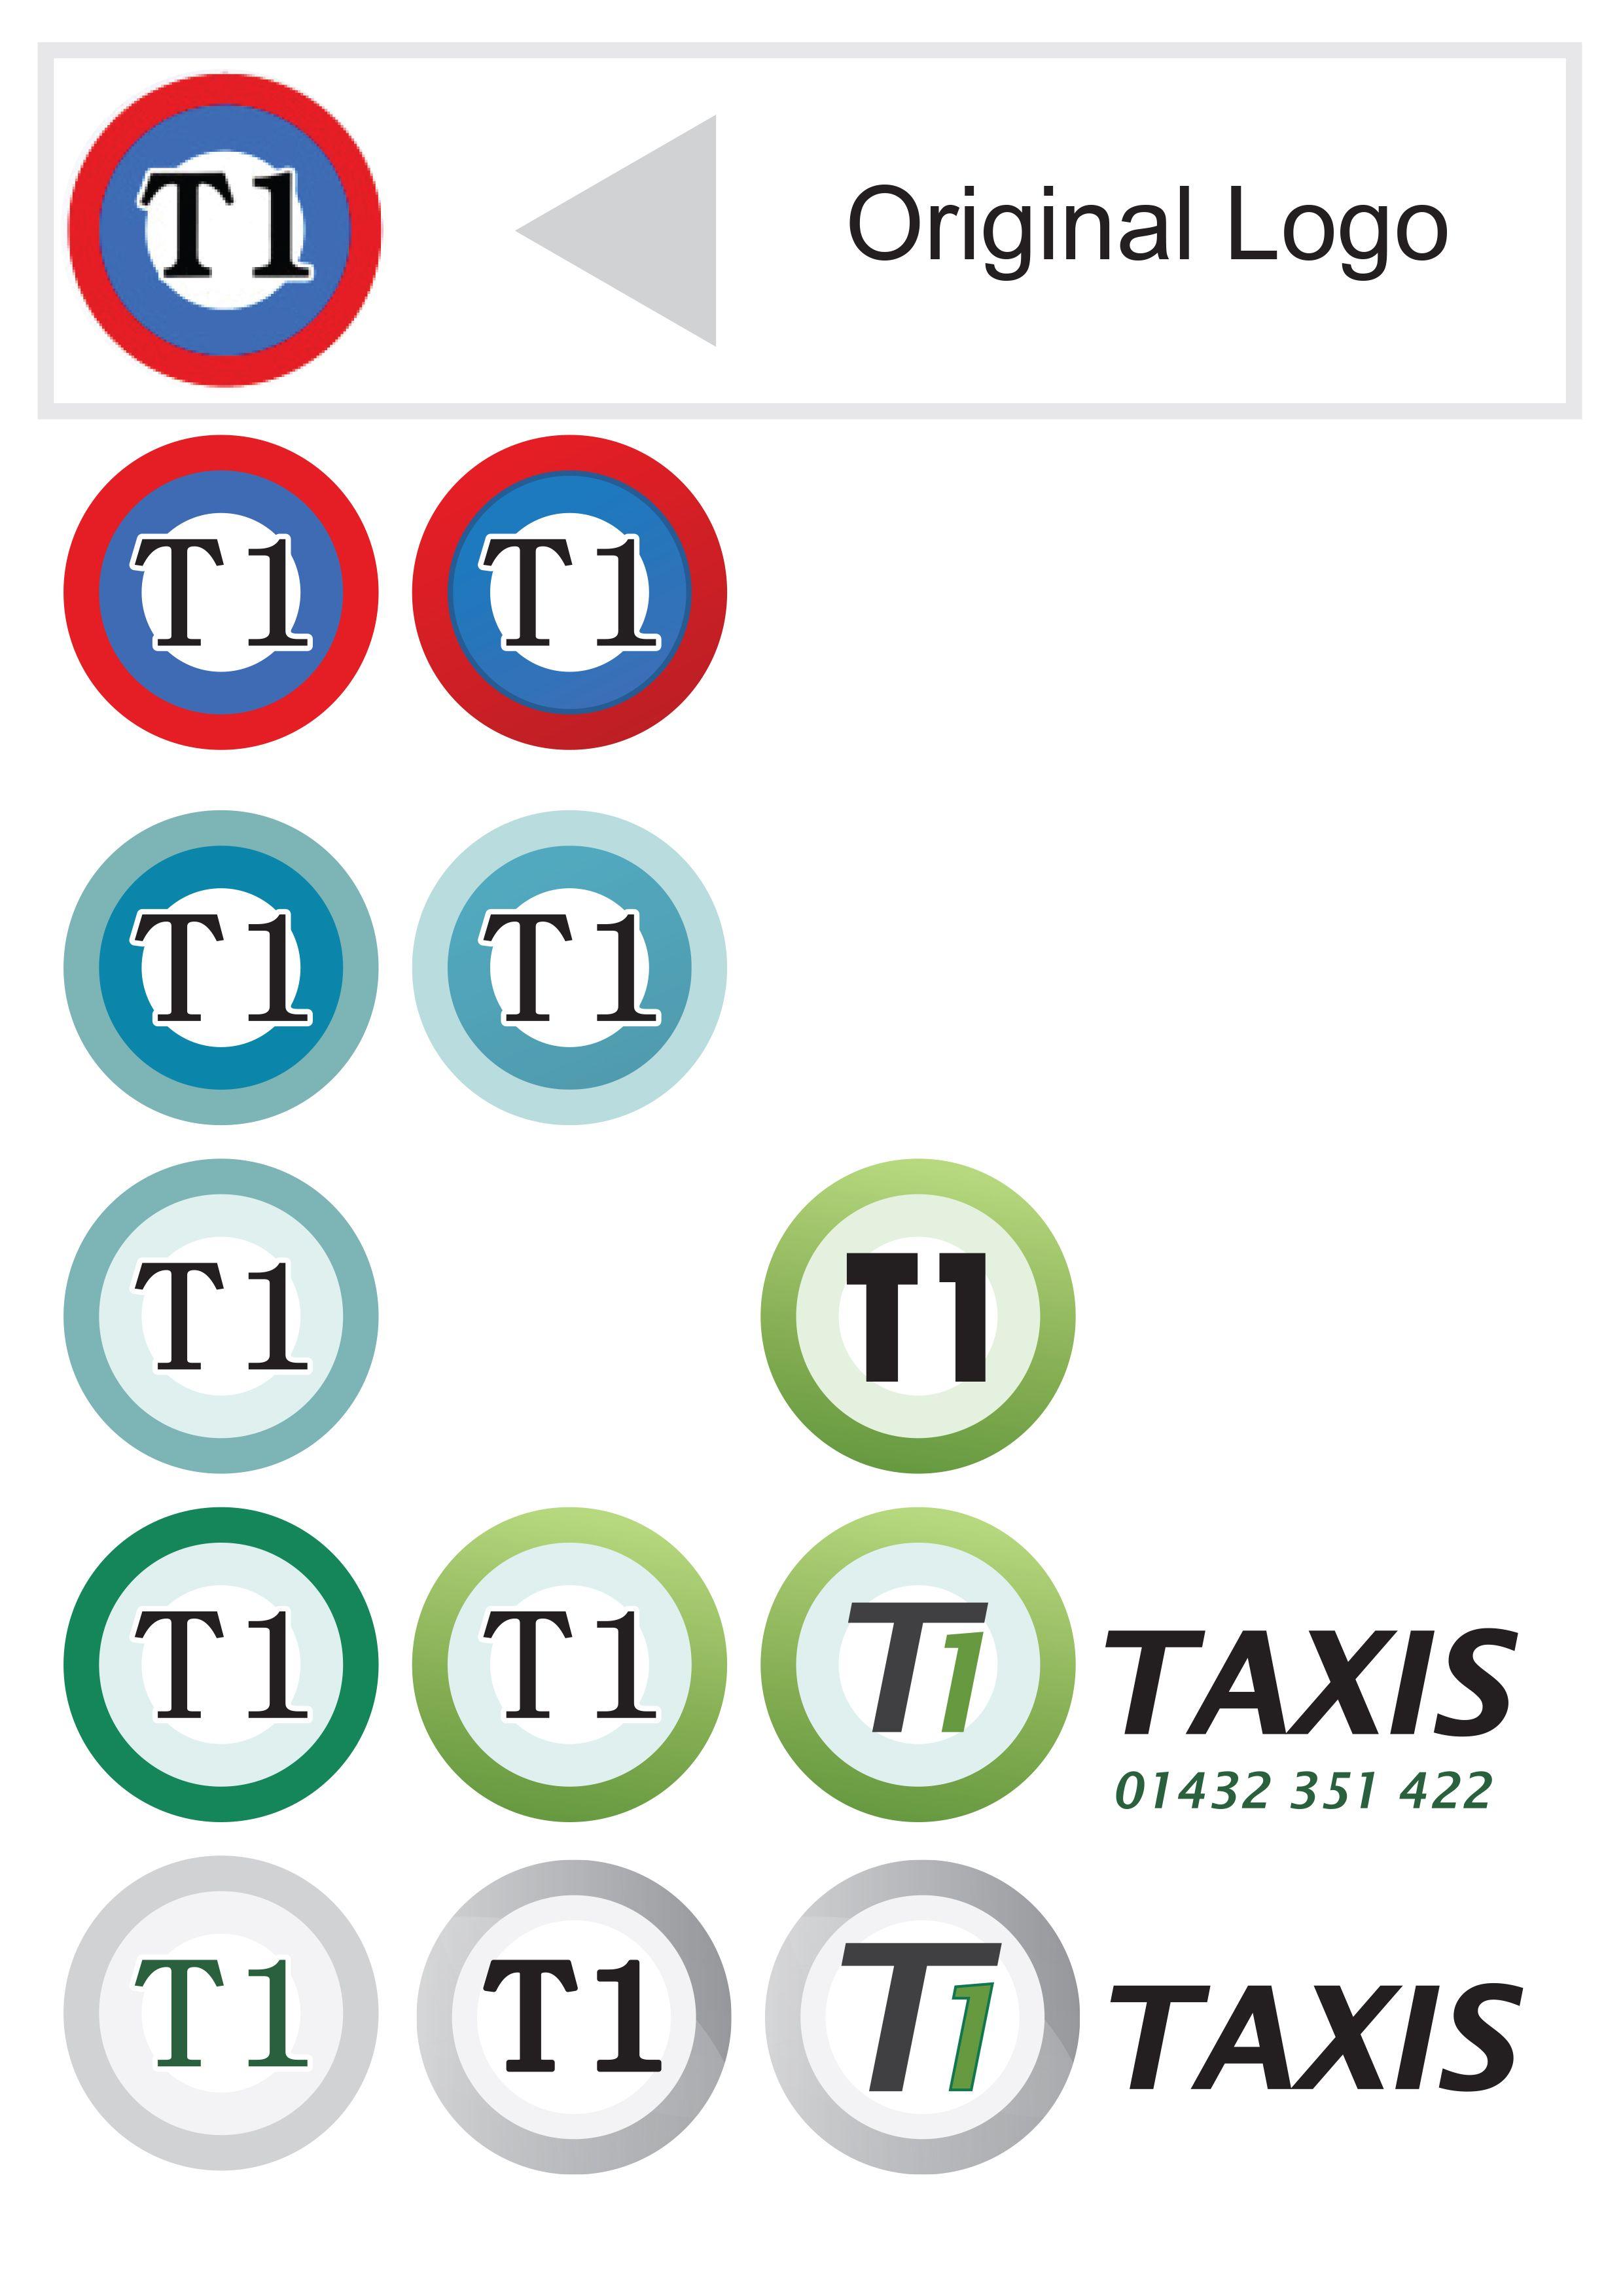 T1 Logo - T1 Taxi logo concepts